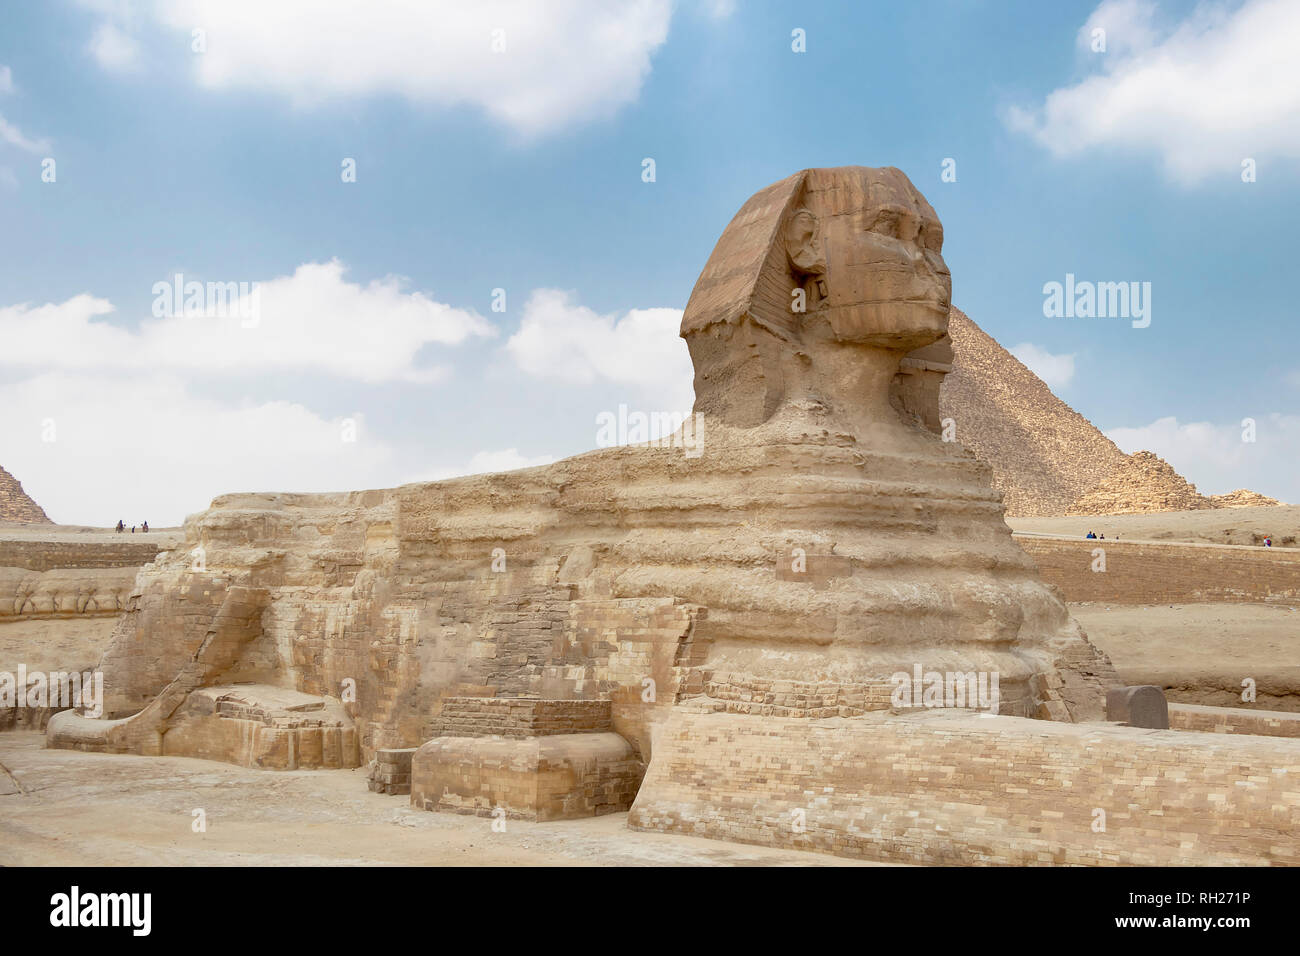 The Sphinx in Giza pyramid complex Stock Photo - Alamy